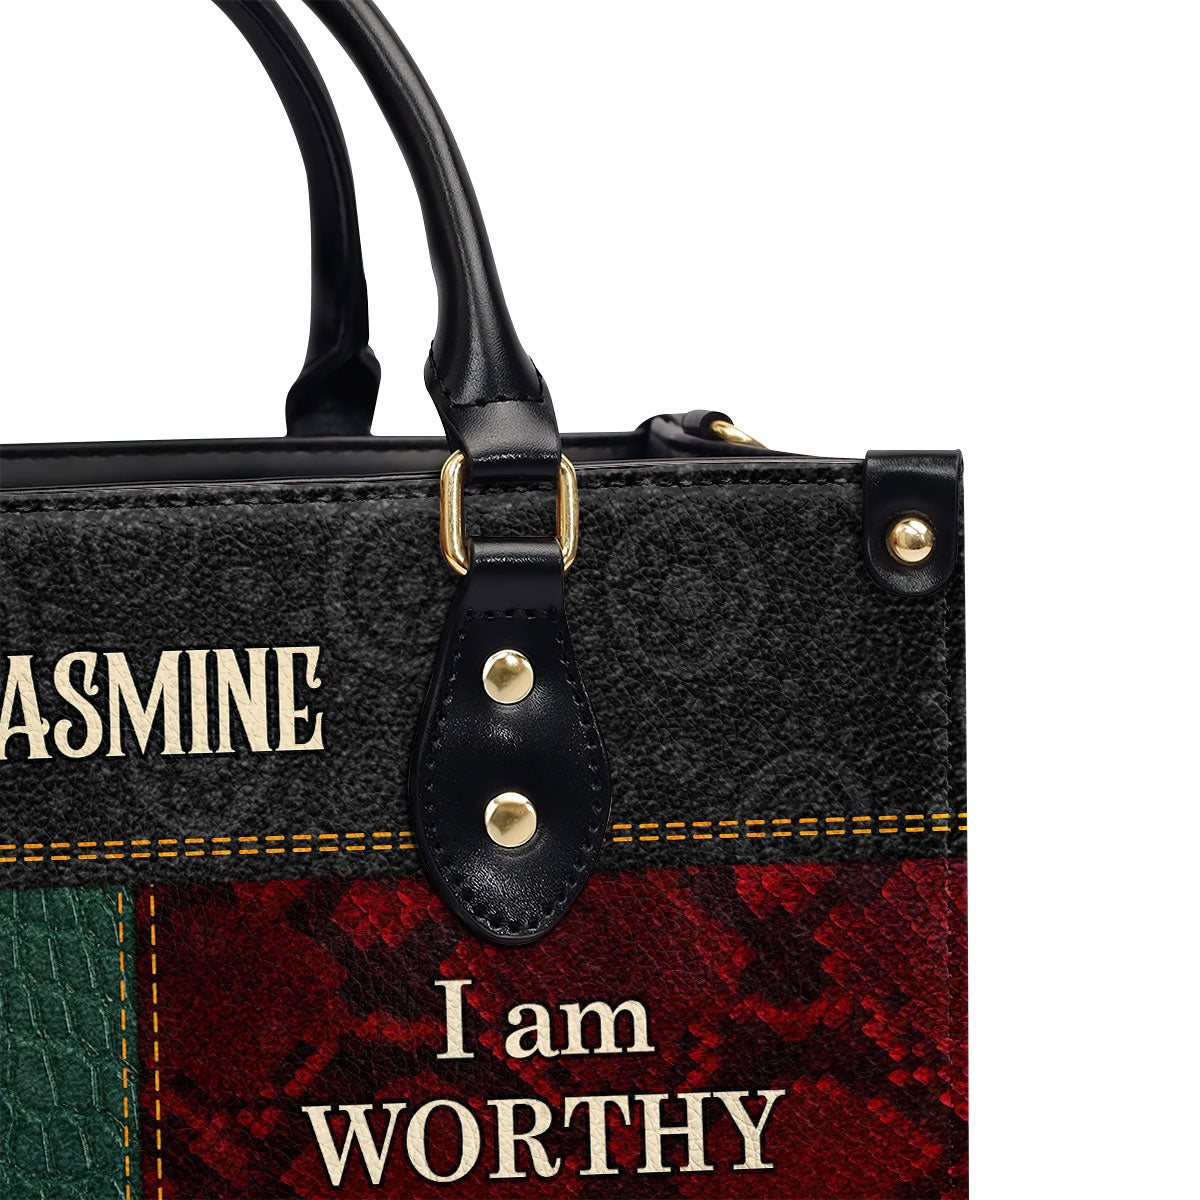 I Am - Personalized Leather Handbag SB08